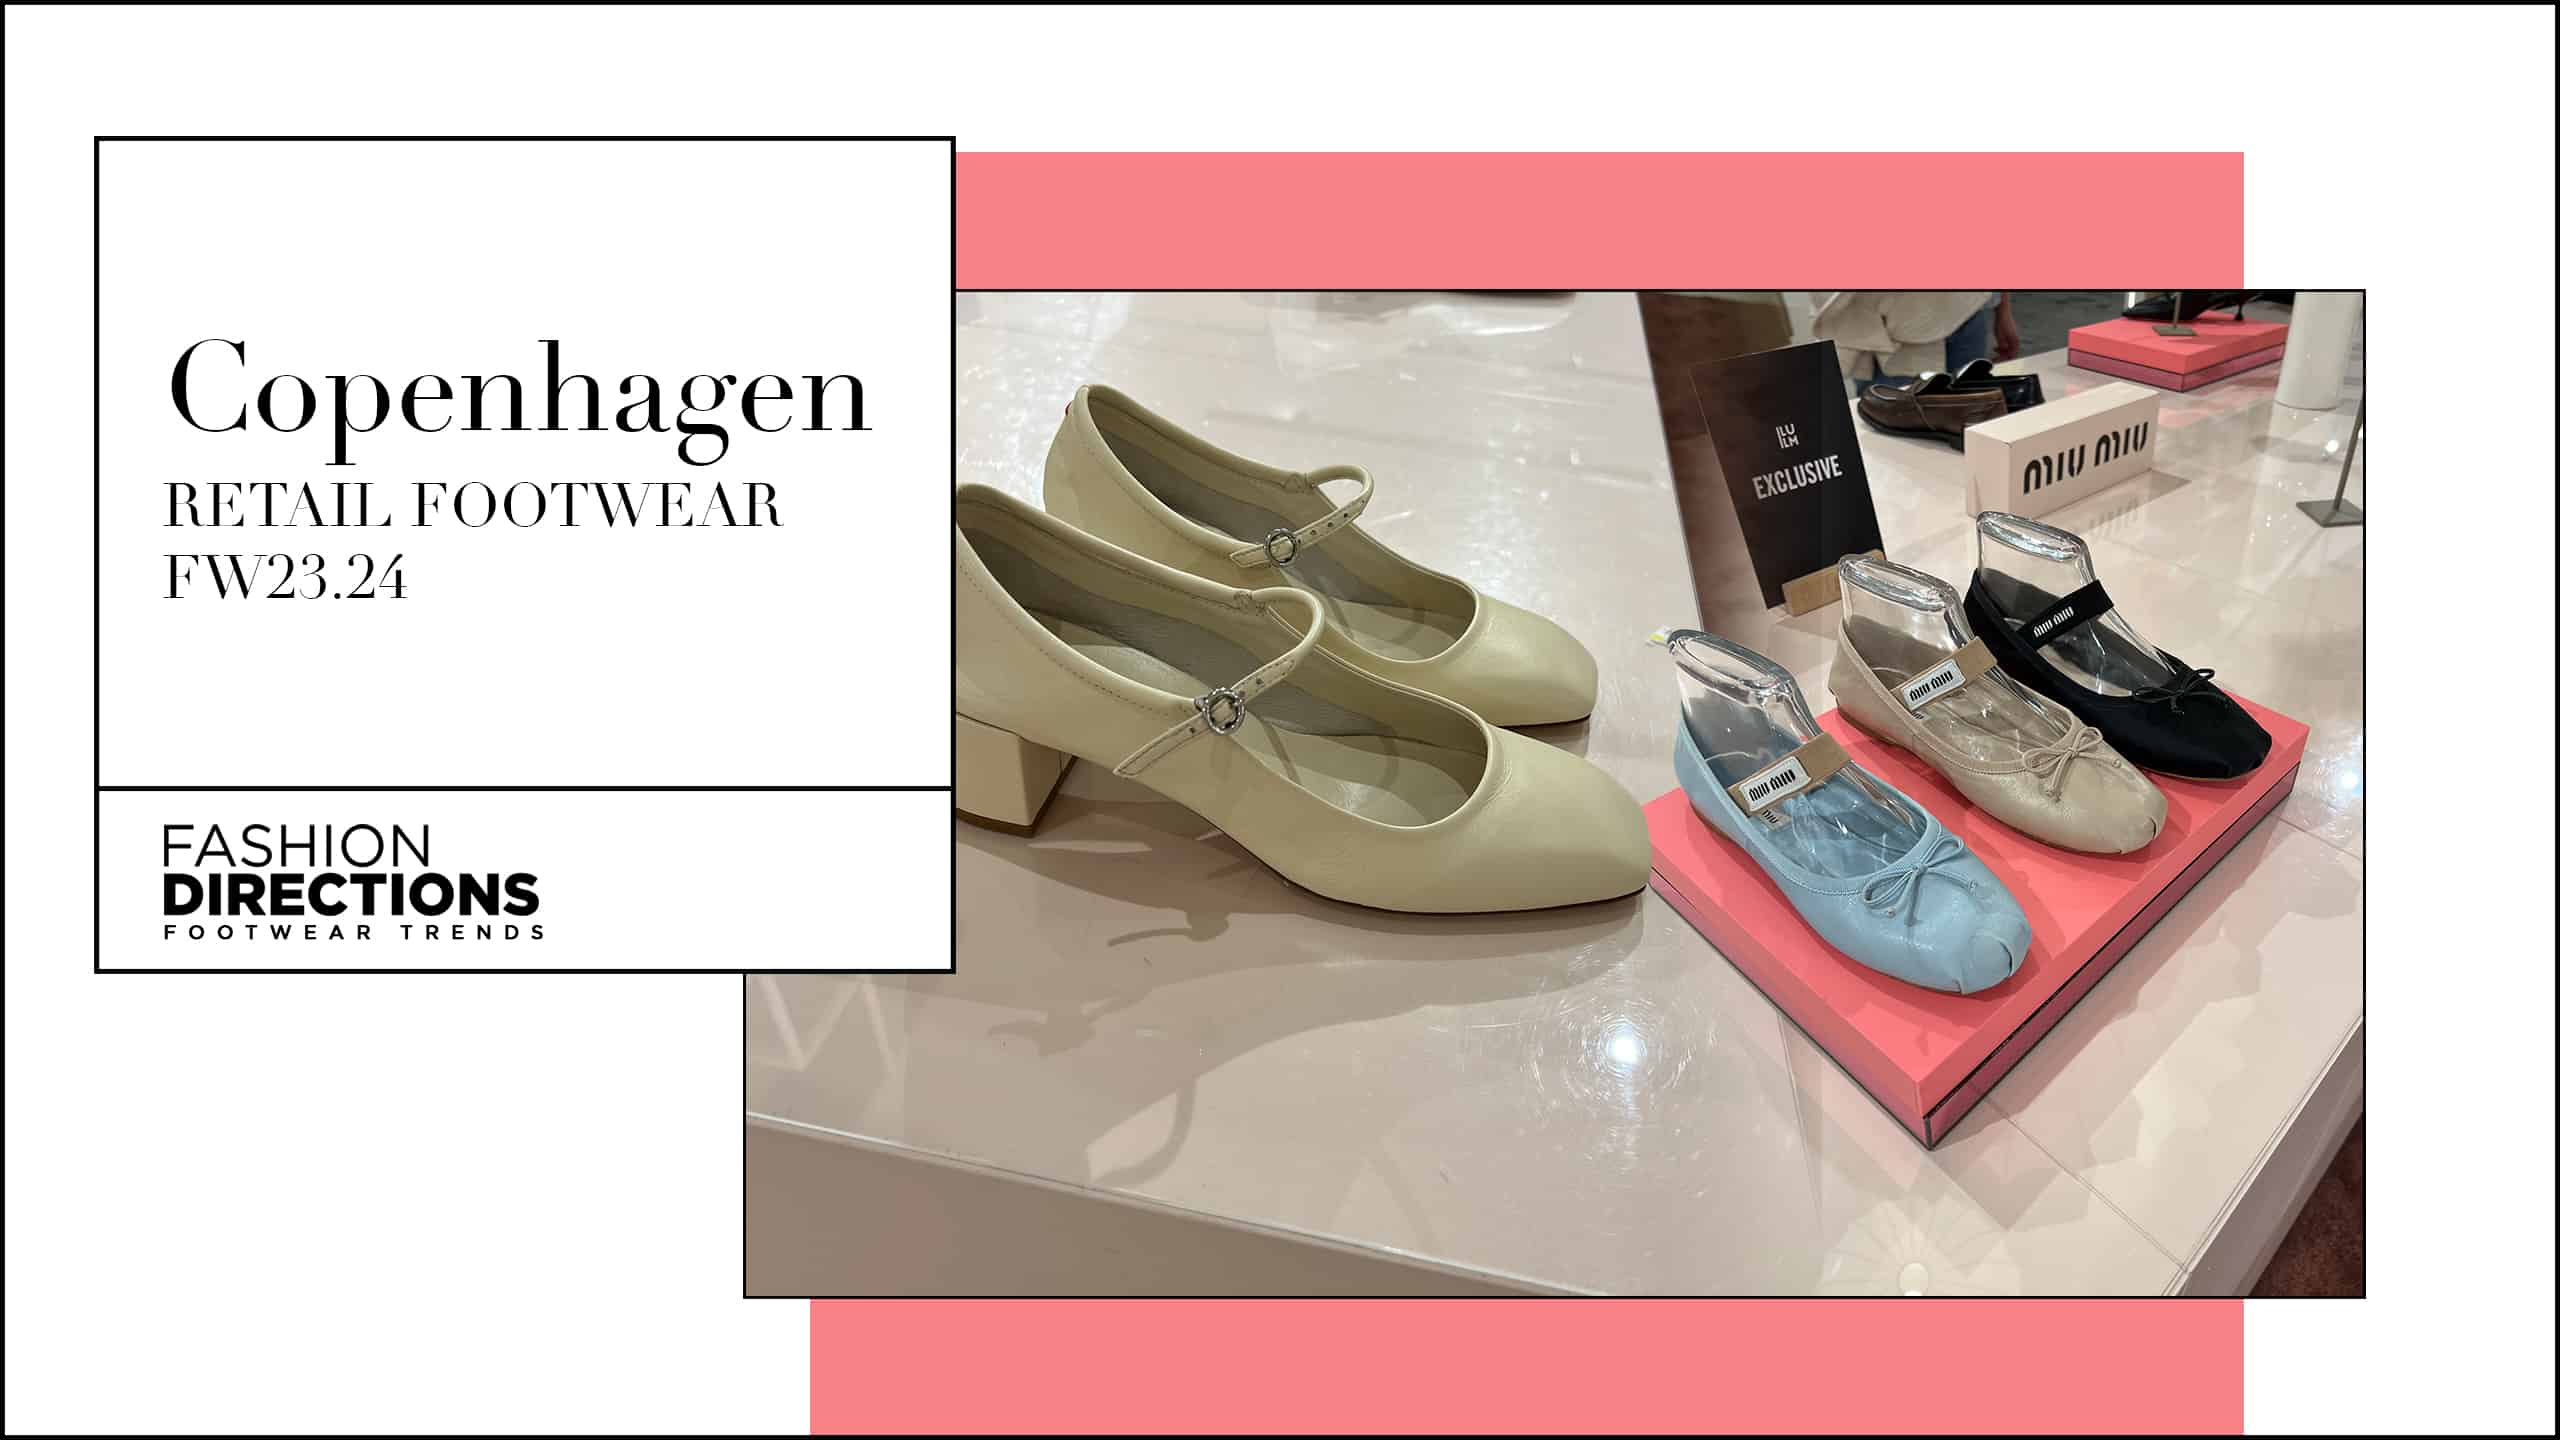 Copenhagen Retail Footwear fw23.24